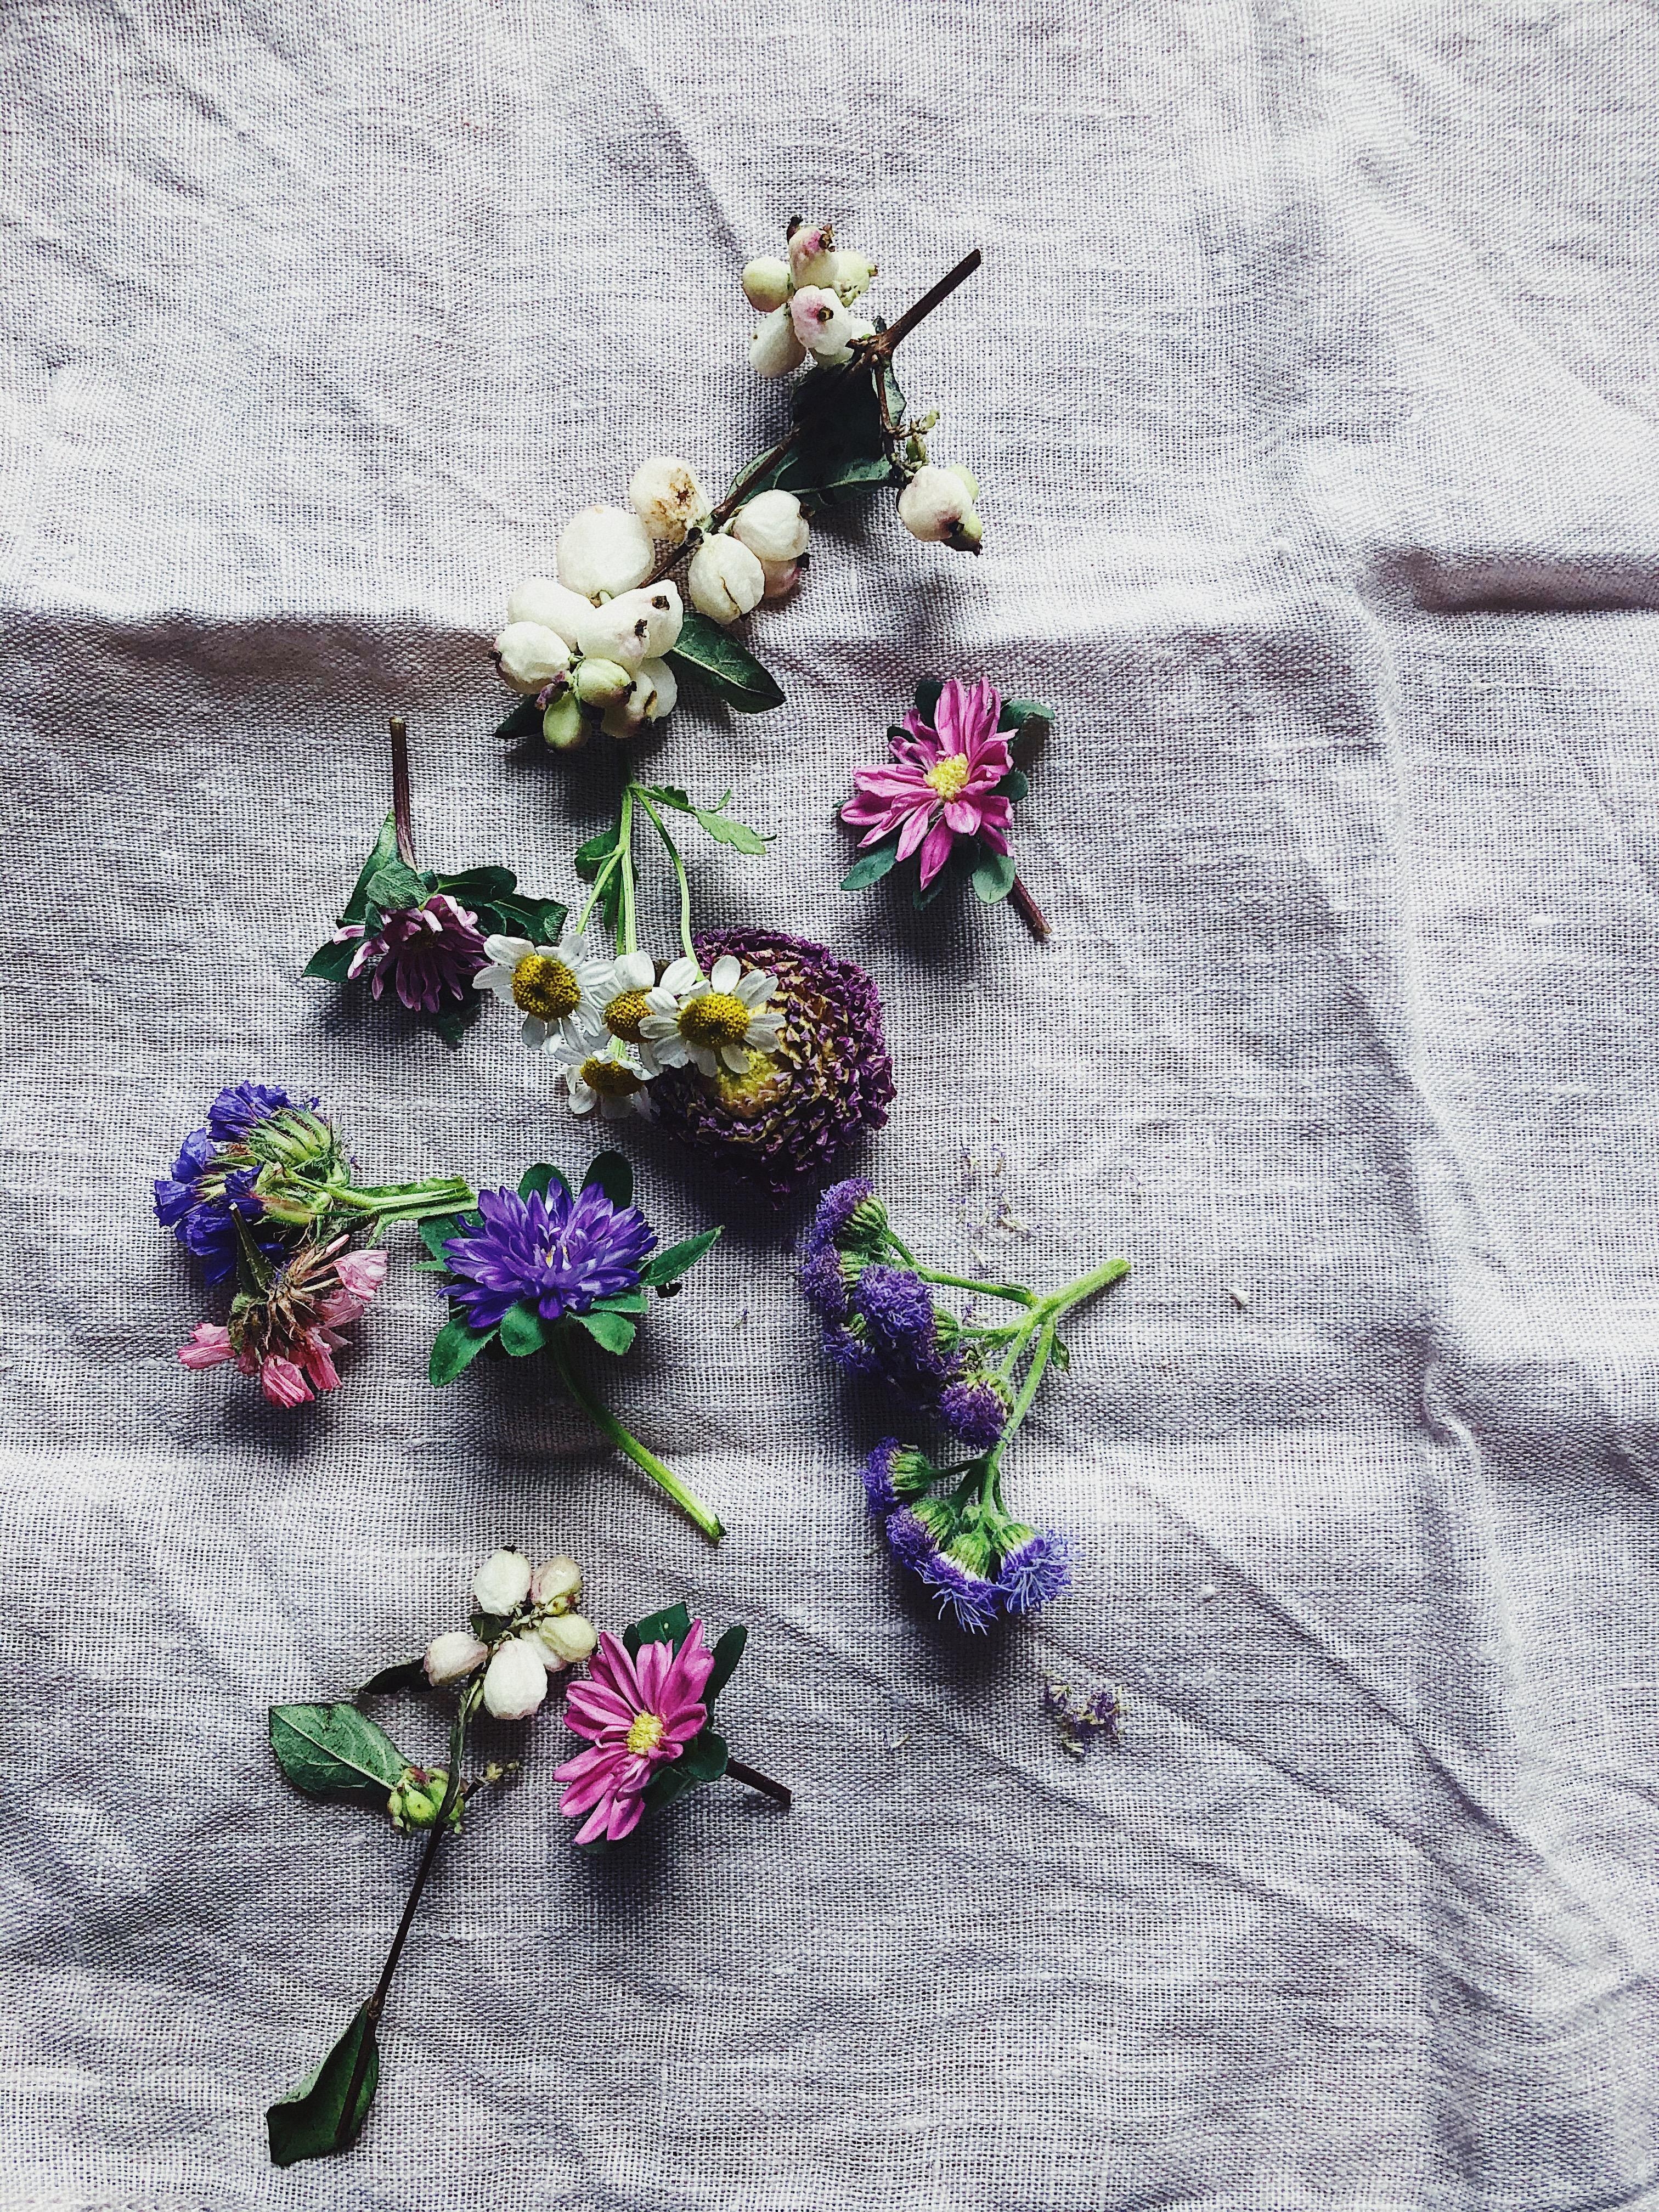 RESTING
#trockenblumen #driedflowers #linen #leinenliebe